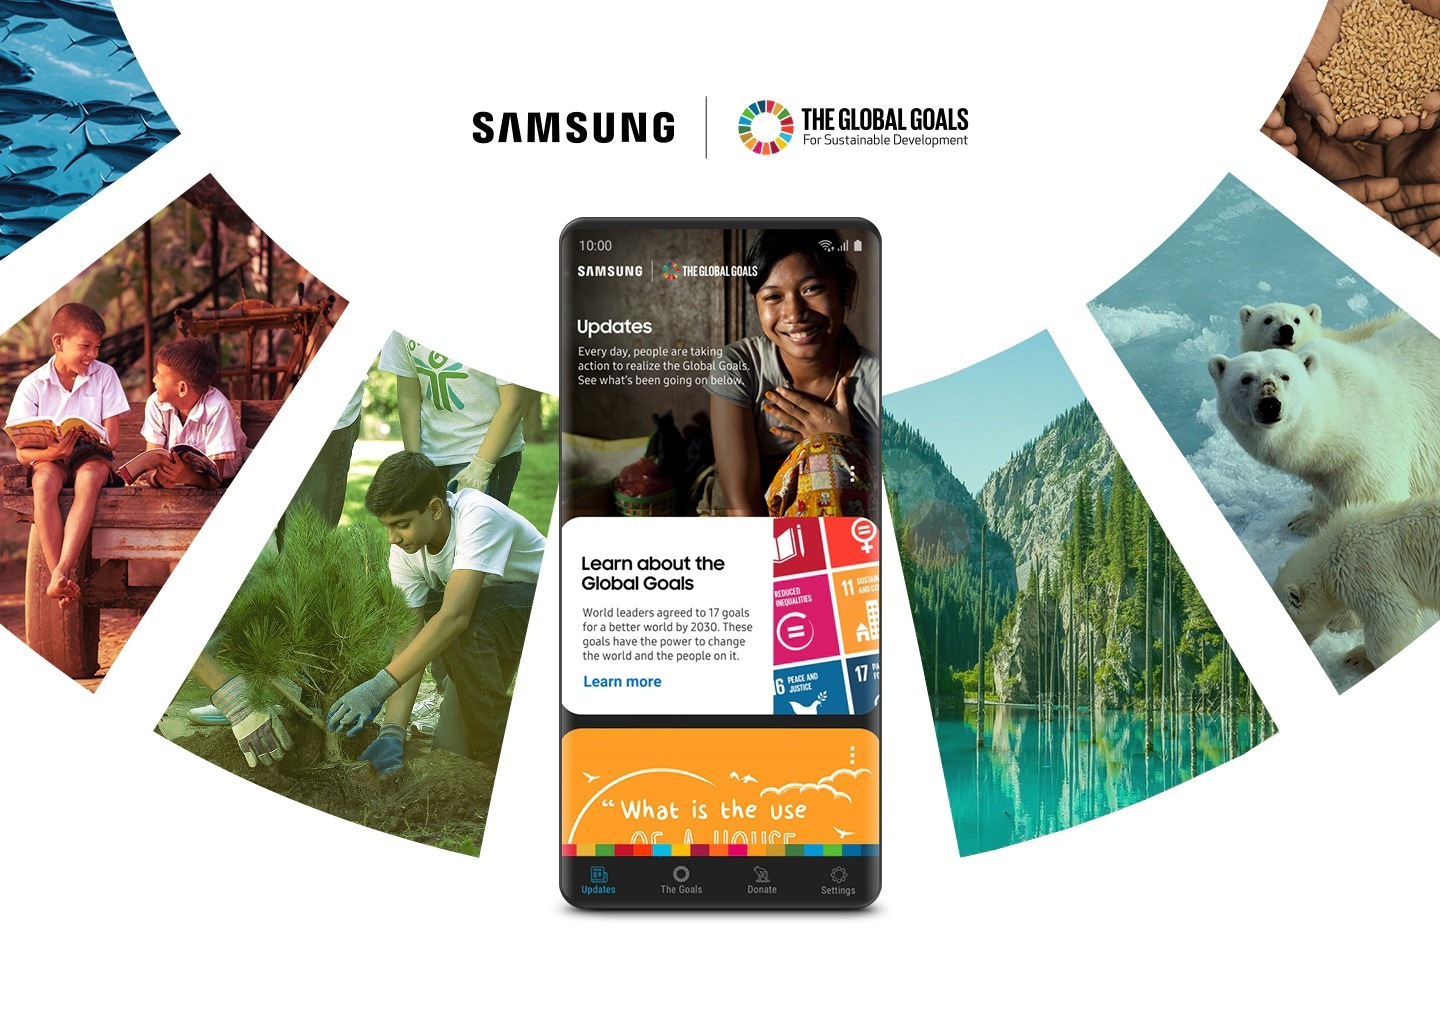 Смартфон Galaxy с имитируемым интерфейсом приложения Samsung Global Goals находится перед кольцом коллажированных изображений, отражающих Цели ООН в области устойчивого развития. Samsung сотрудничает с Организацией Объединенных Наций, чтобы дать пользователям возможность сделать более светлое будущее для всех.